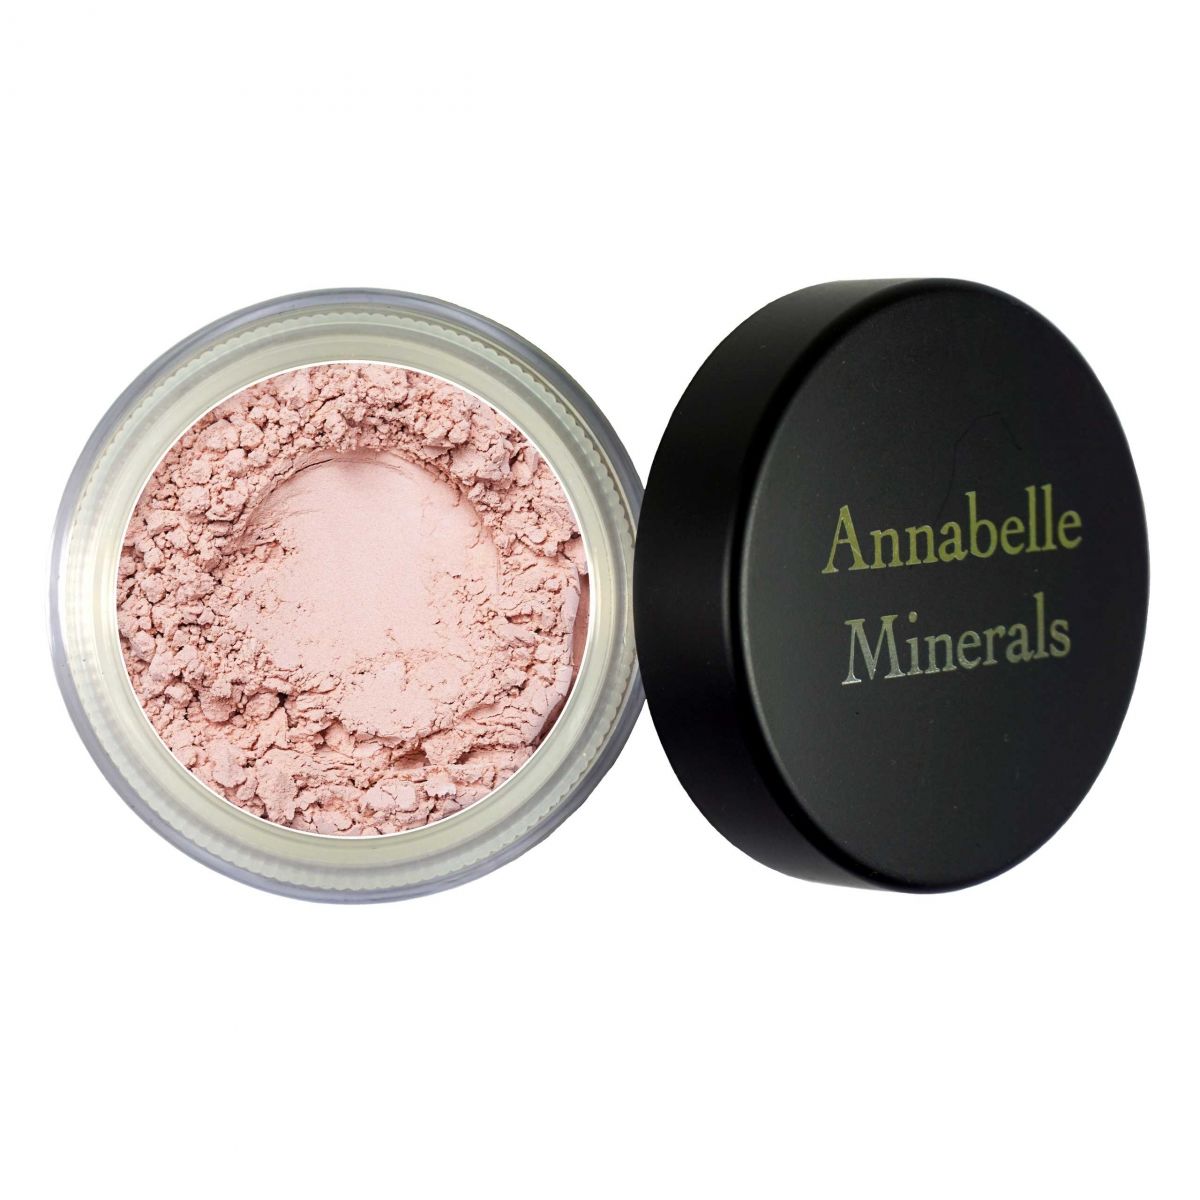 Annabelle Minerals Cień glinkowy w odcieniu Smoothie - 3g